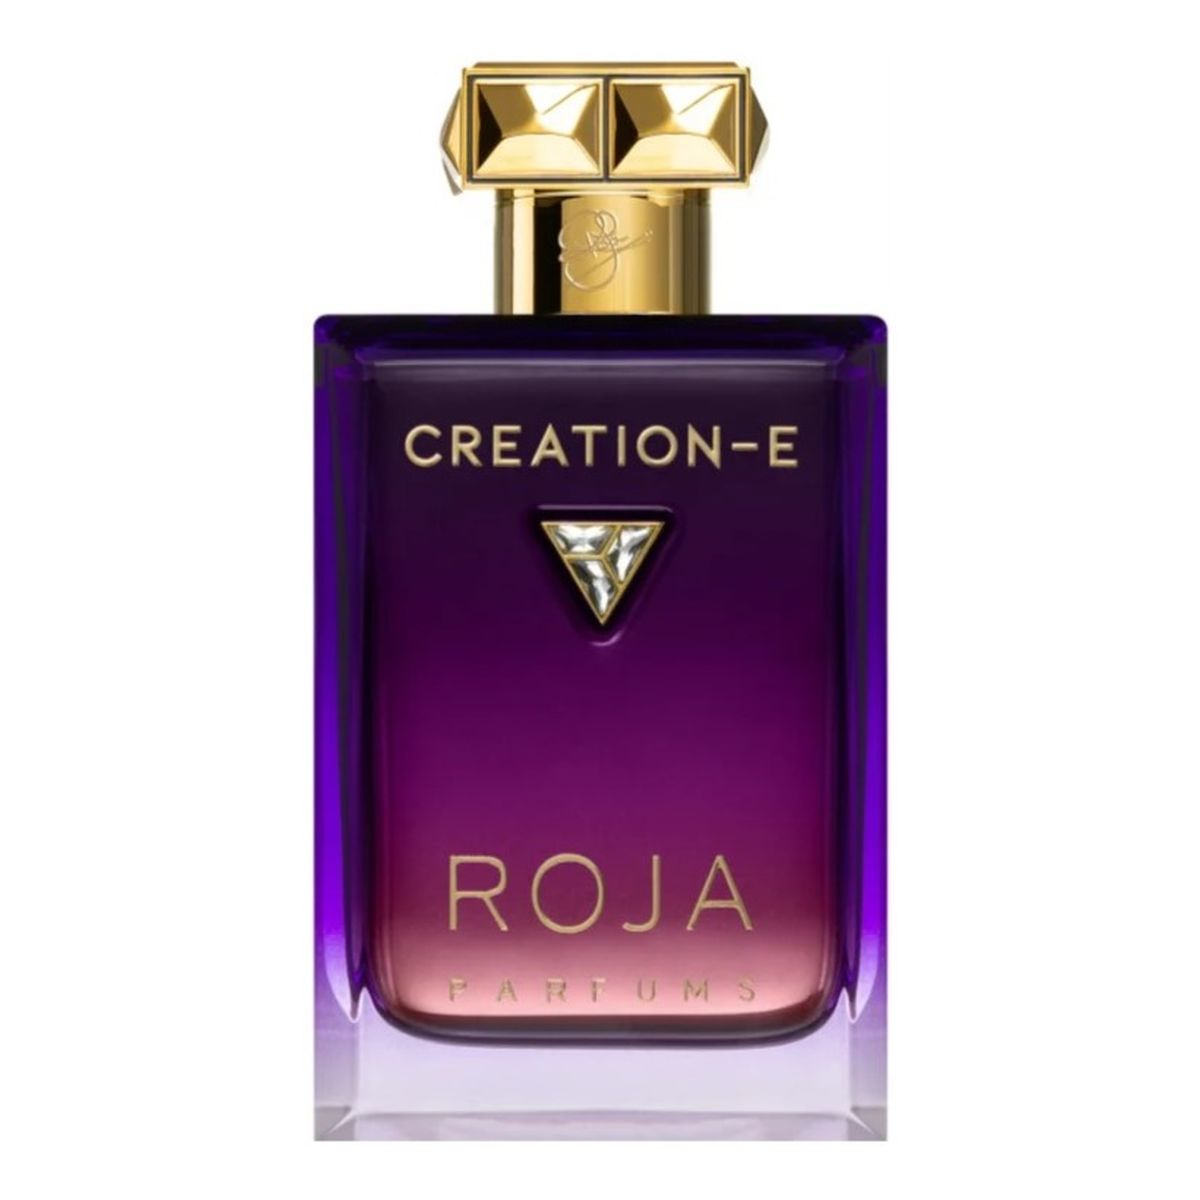 Roja Parfums Creation-e esencja perfum spray 100ml